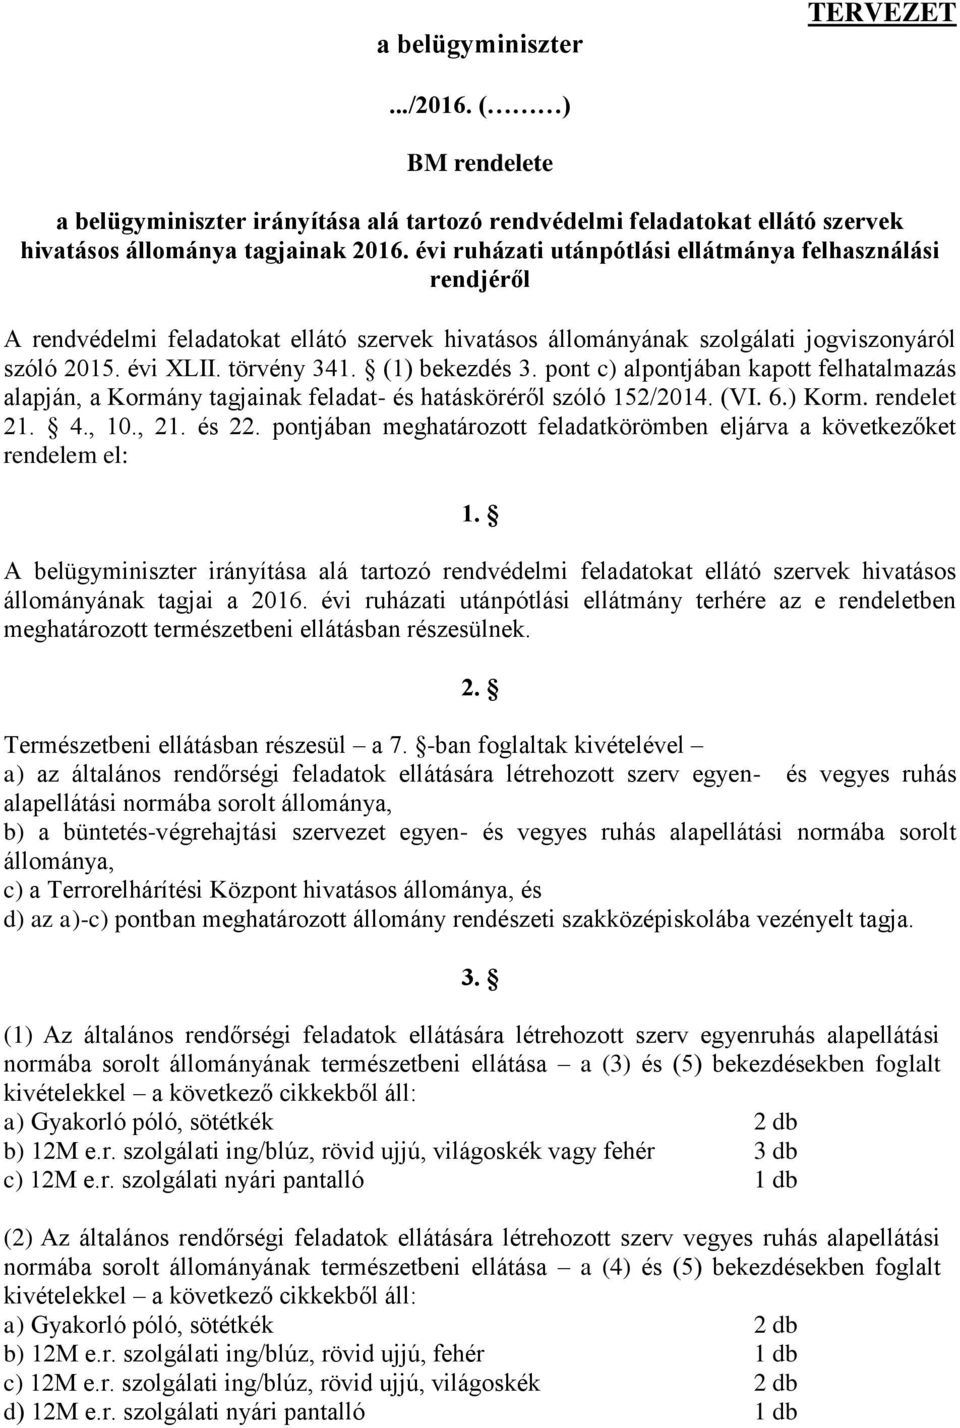 pont c) alpontjában kapott felhatalmazás alapján, a Kormány tagjainak feladat- és hatásköréről szóló 152/2014. (VI. 6.) Korm. rendelet 21. 4., 10., 21. és 22.